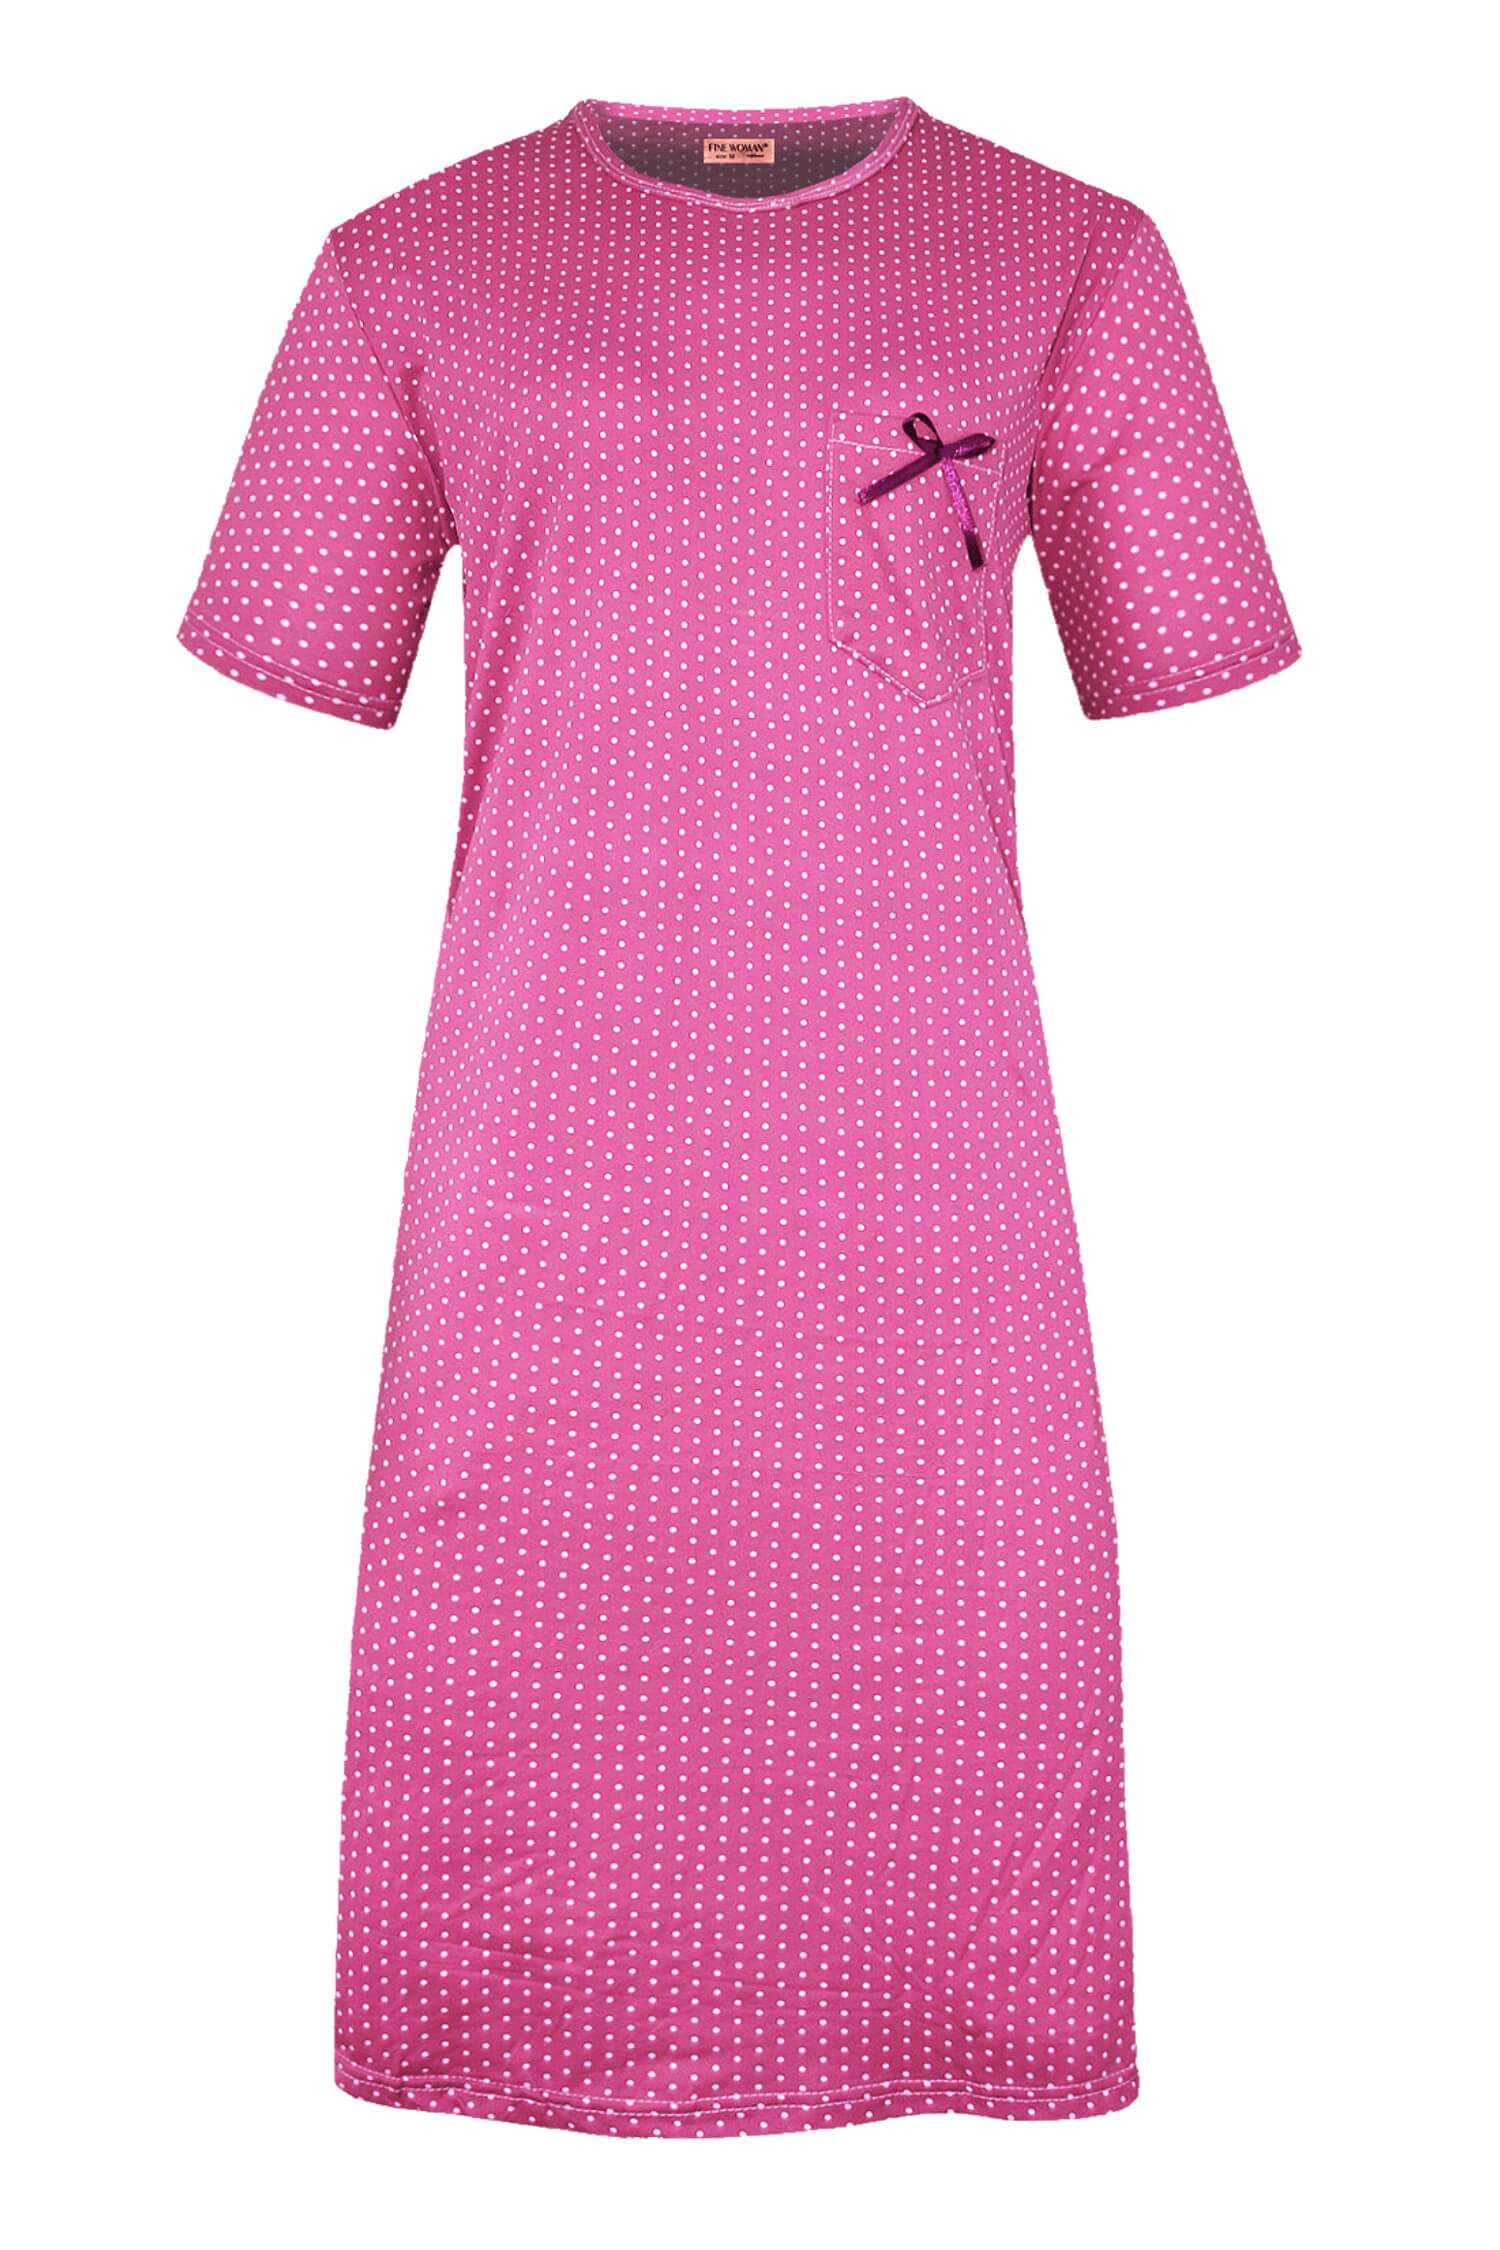 Monika dámská noční košile s puntíky 6533 3XL tmavě růžová